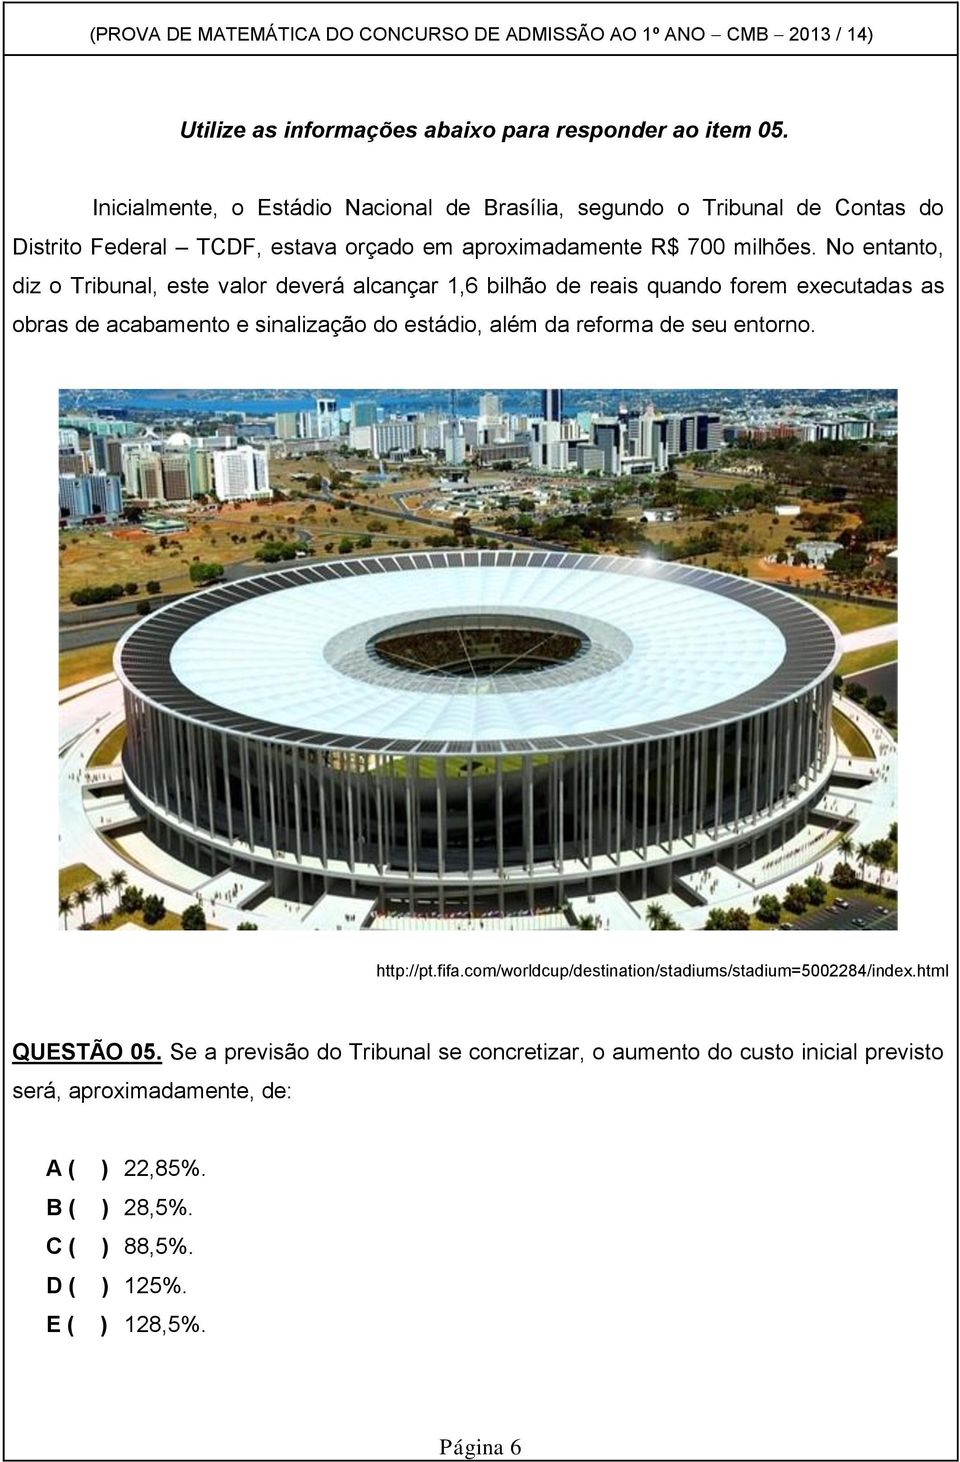 No entanto, diz o Tribunal, este valor deverá alcançar 1,6 bilhão de reais quando forem executadas as obras de acabamento e sinalização do estádio, além da reforma